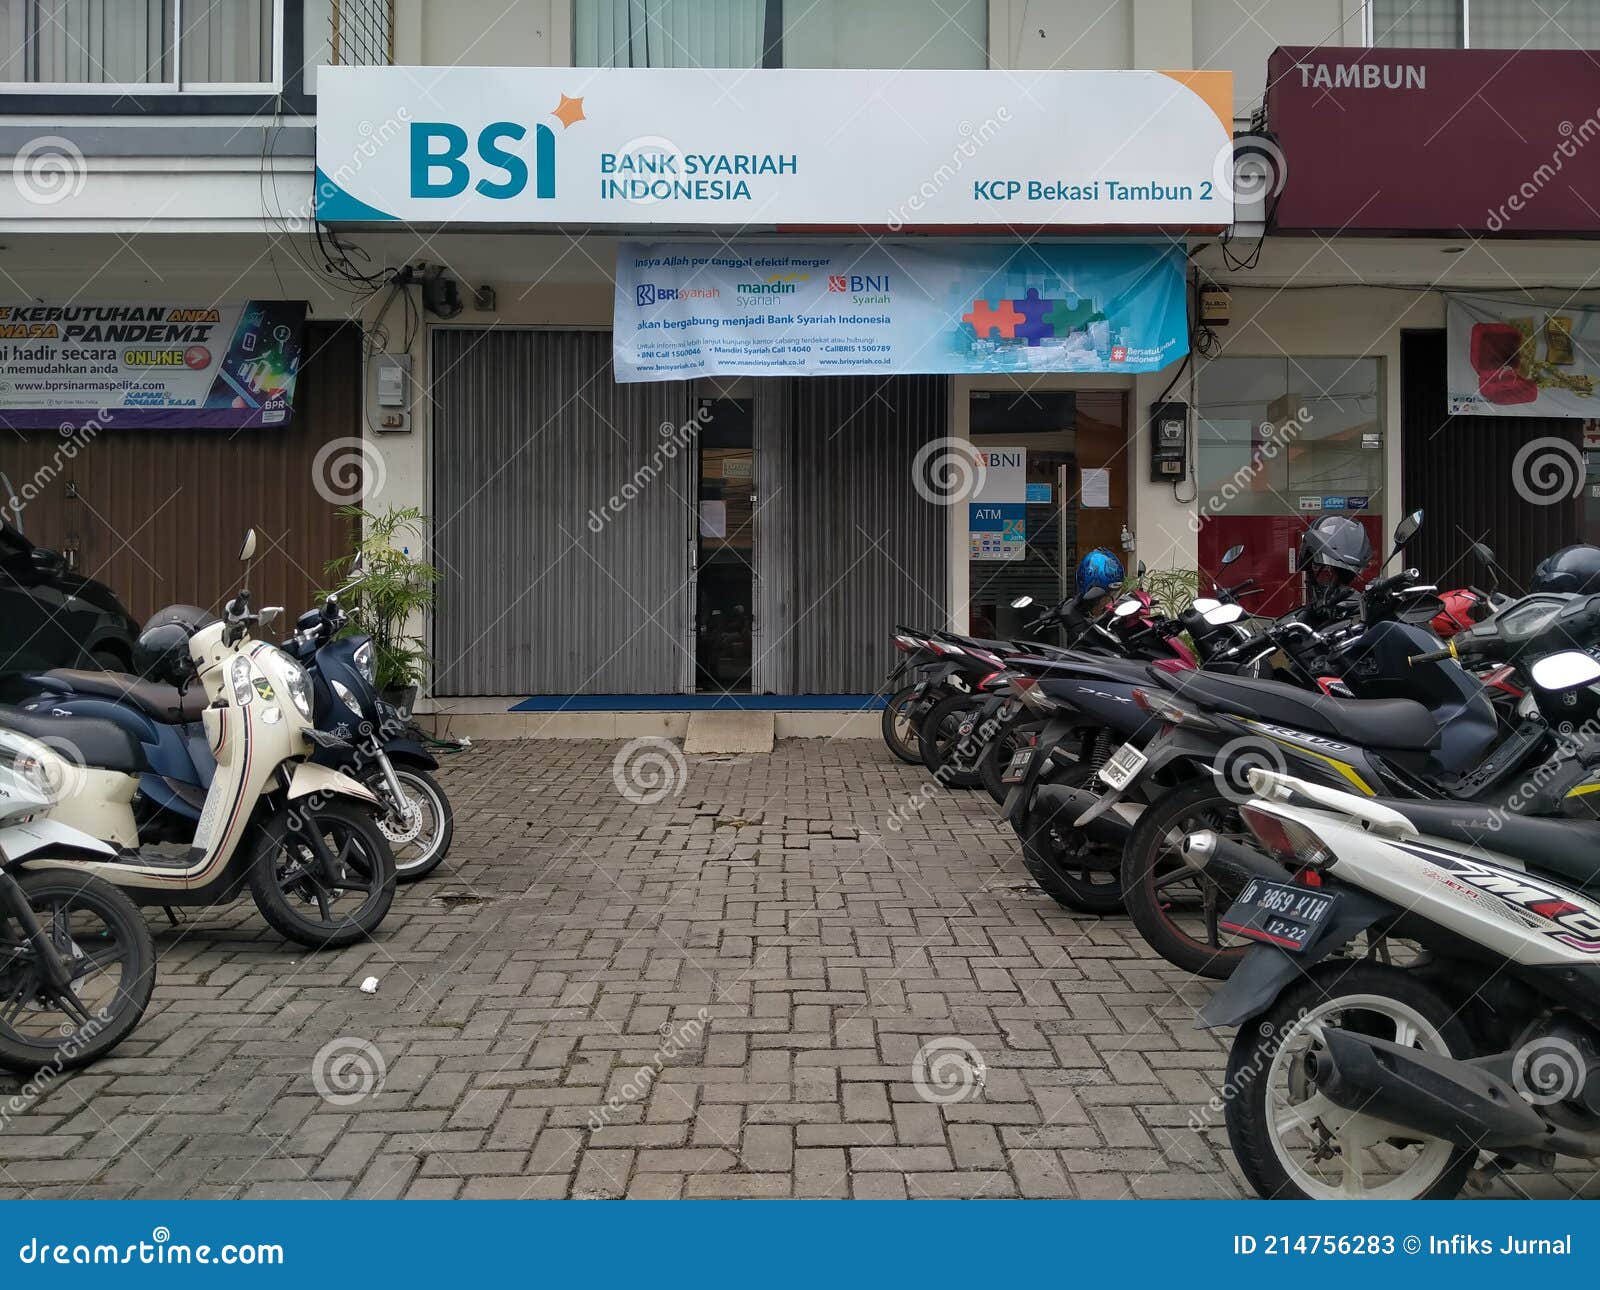 Bsi bank syariah indonesia